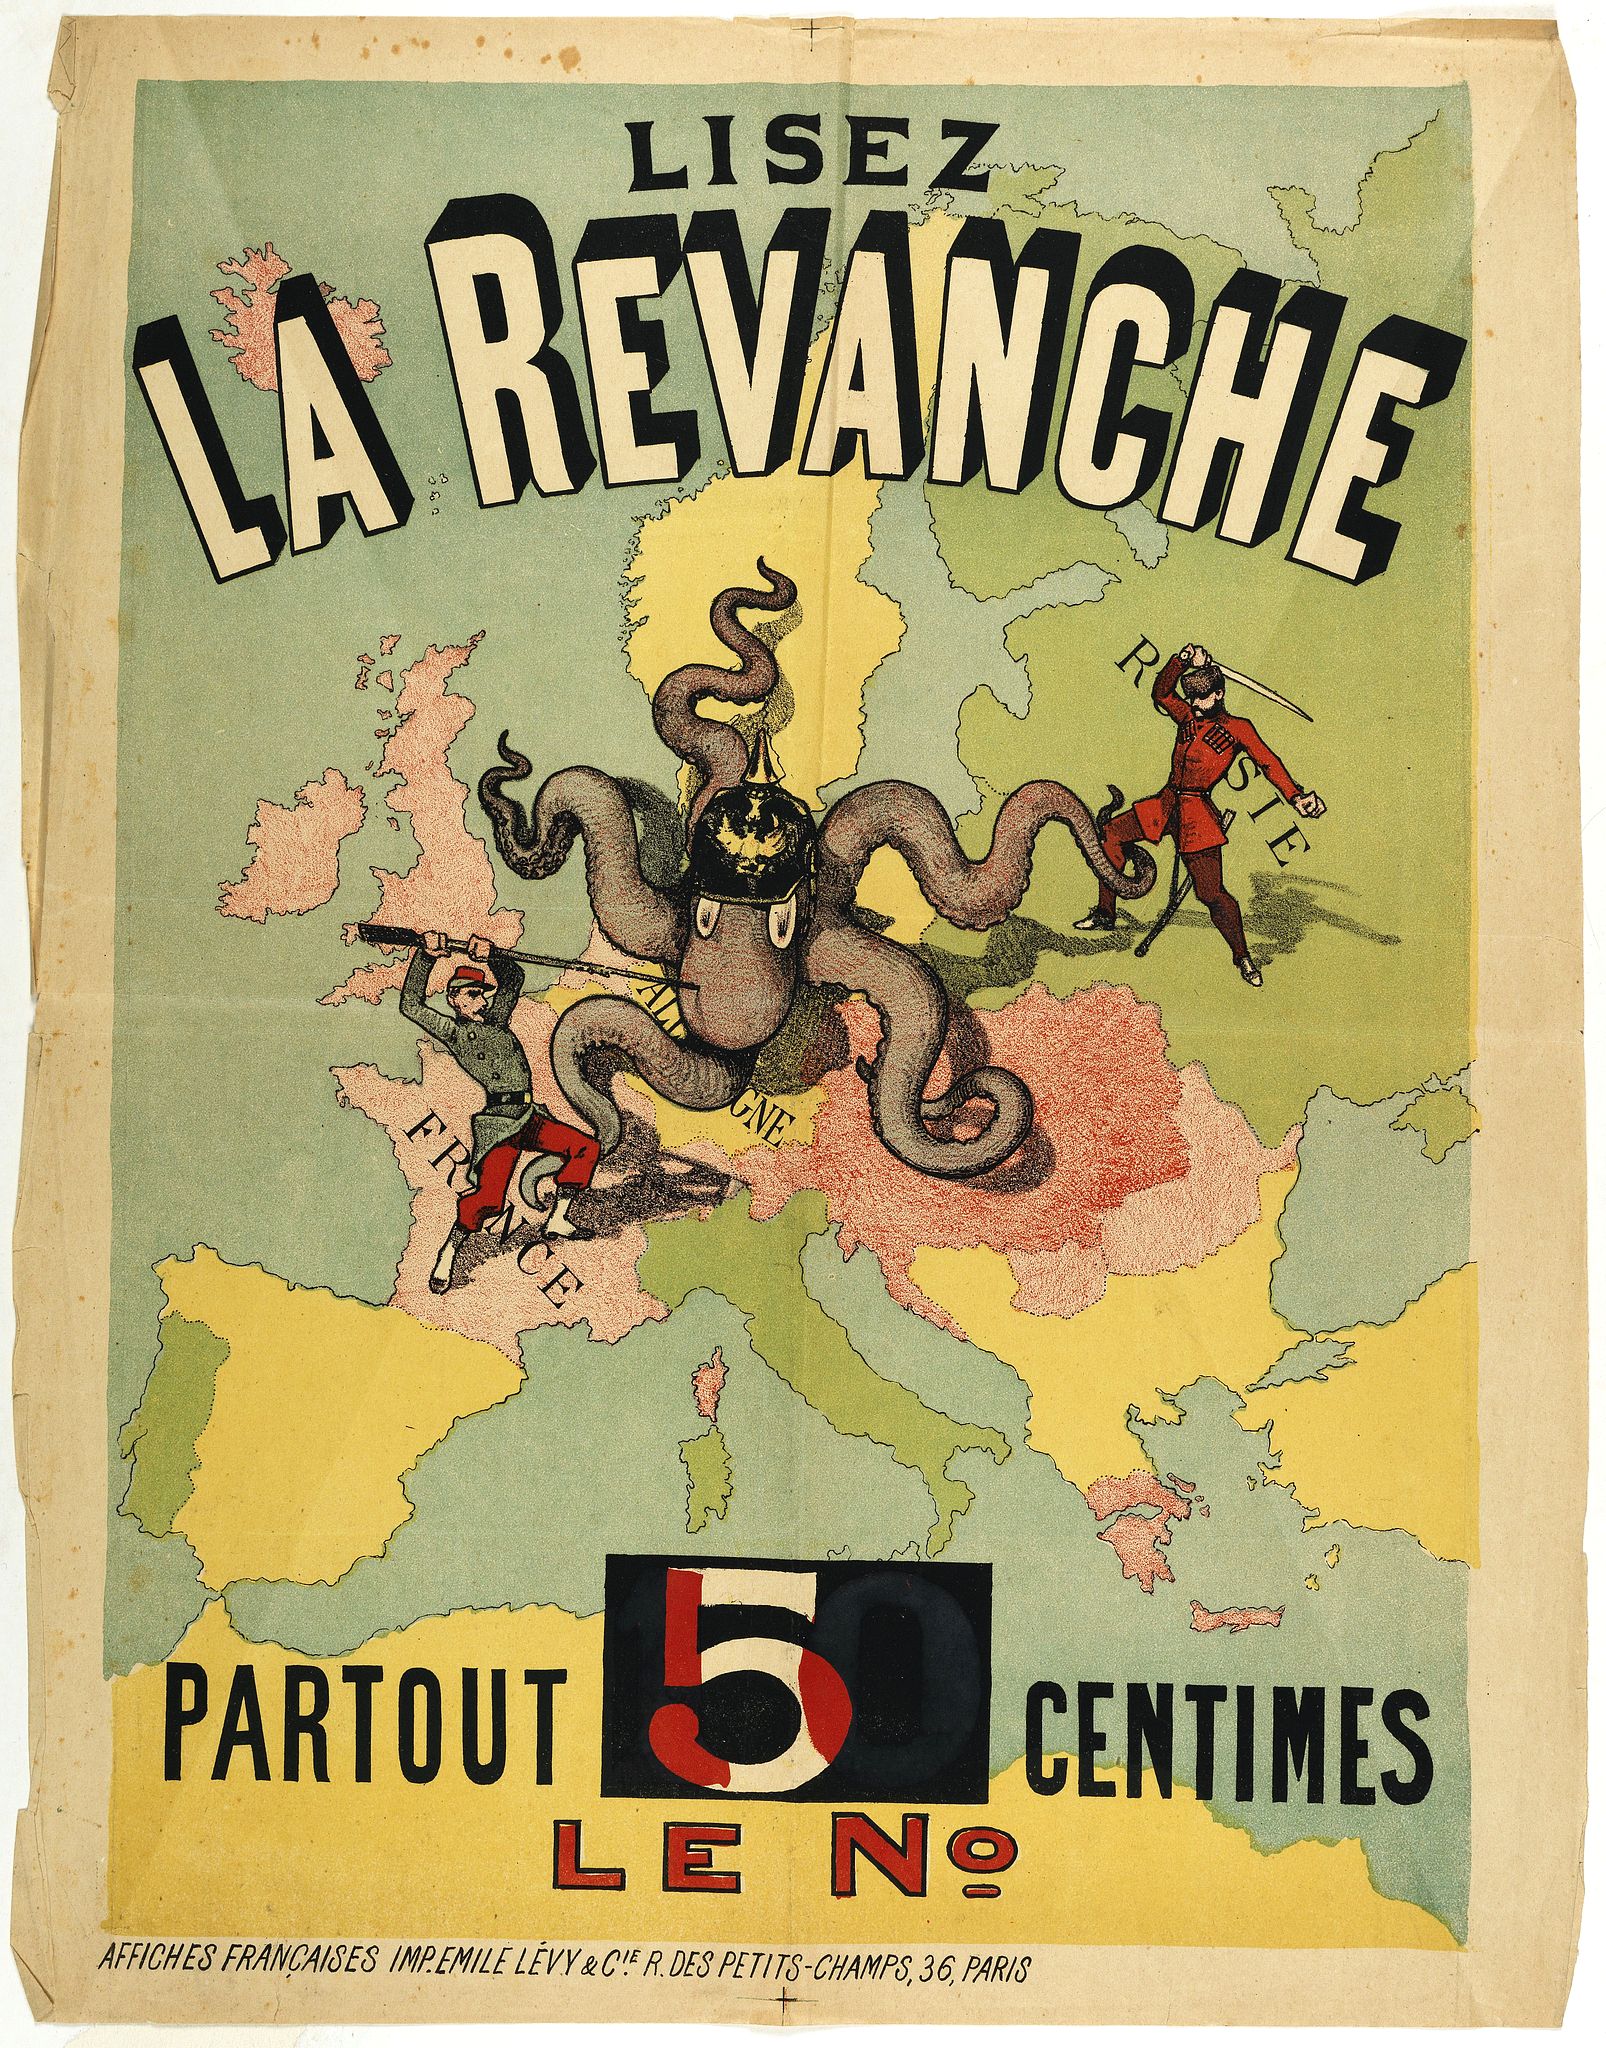 Lisez la Revanche partout 5 centimes le n°. - Old map by LEVY & Co., E.